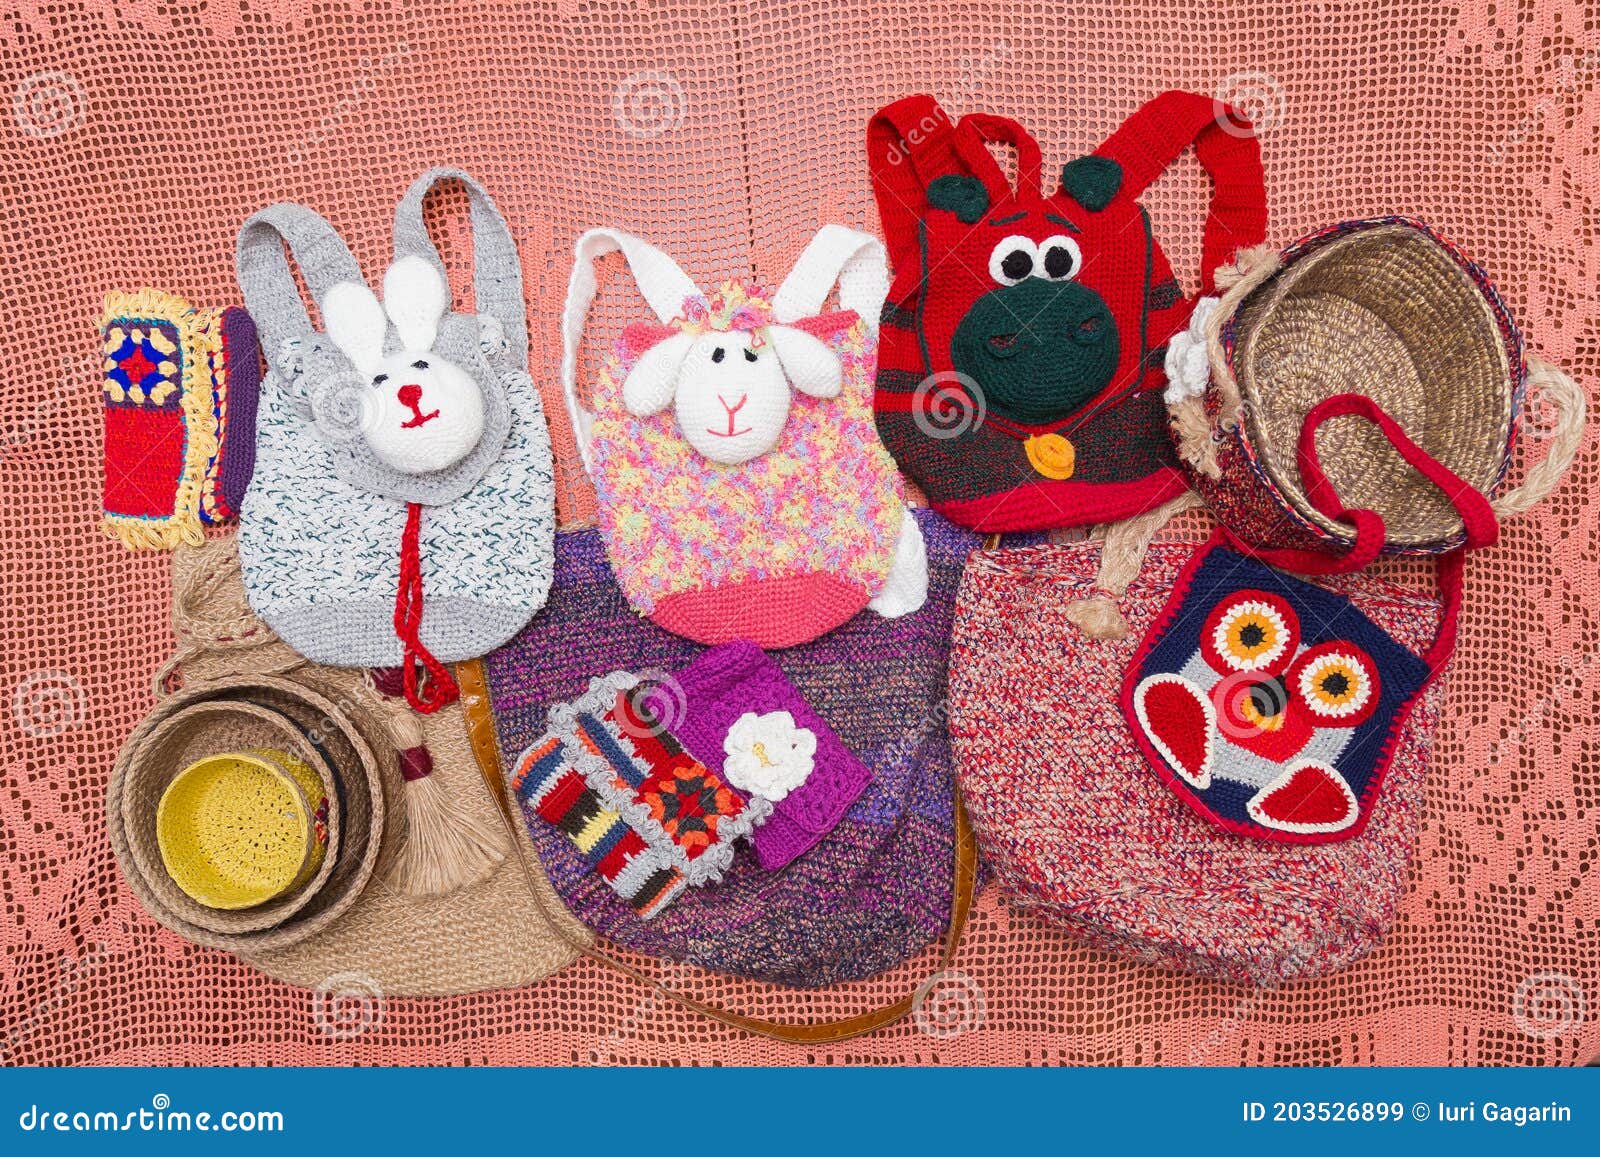 Hobby Do Início Do Século XX. Mochilas De Lã Para Bebês E Crianças. Crochê.  Tema Vintage. Tricô Imagem de Stock - Imagem de flor, tema: 203526899